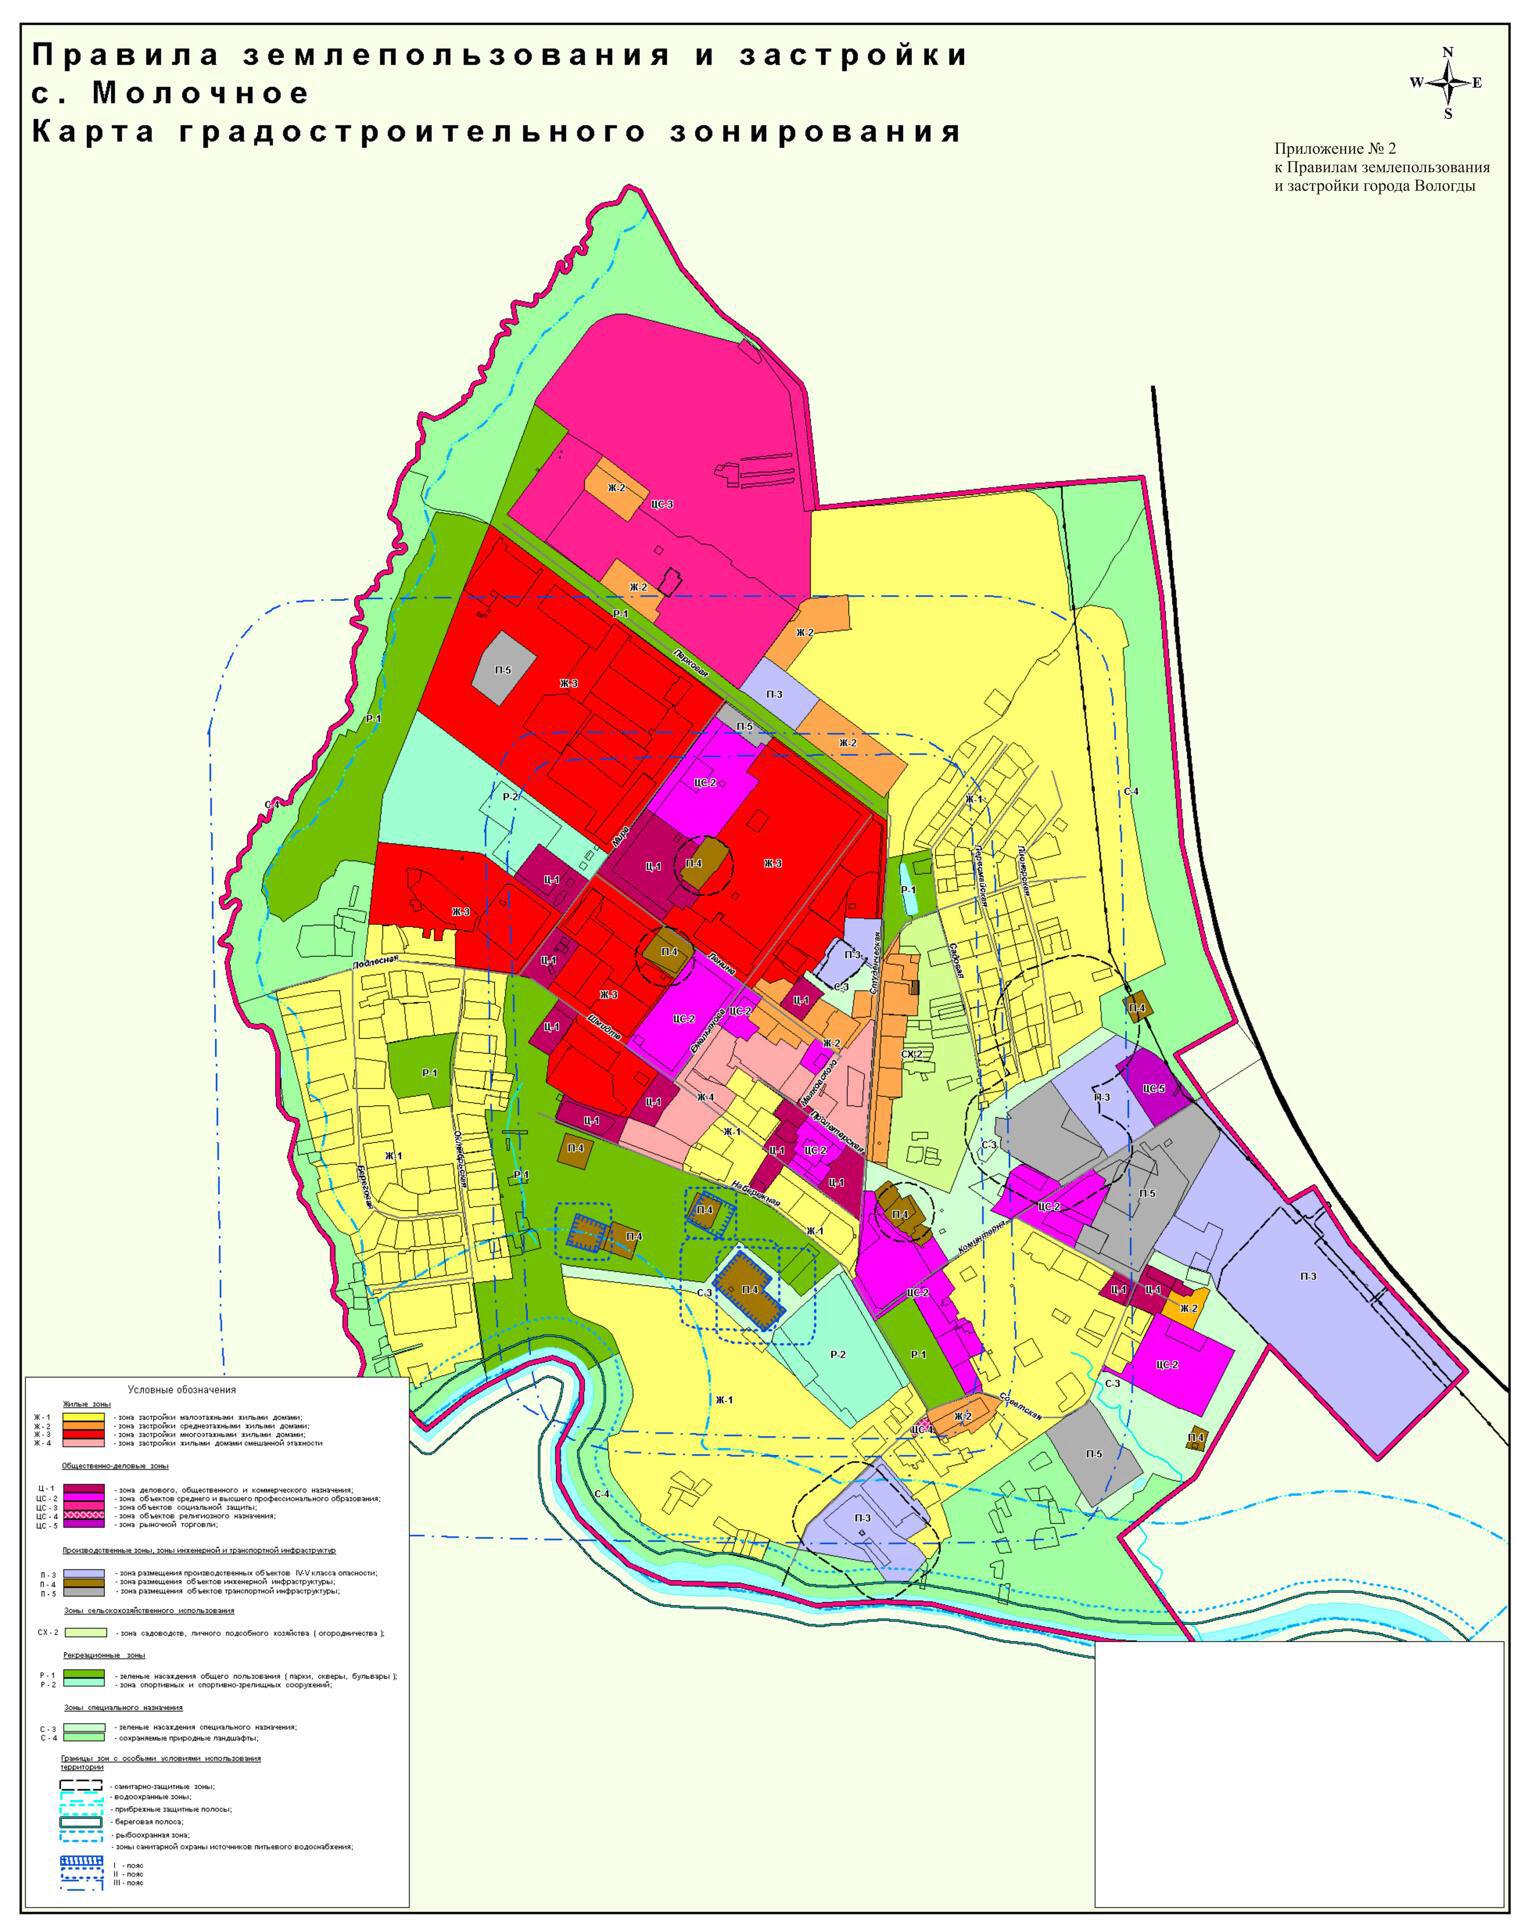 Карта градостроительного зонирования города Вологды